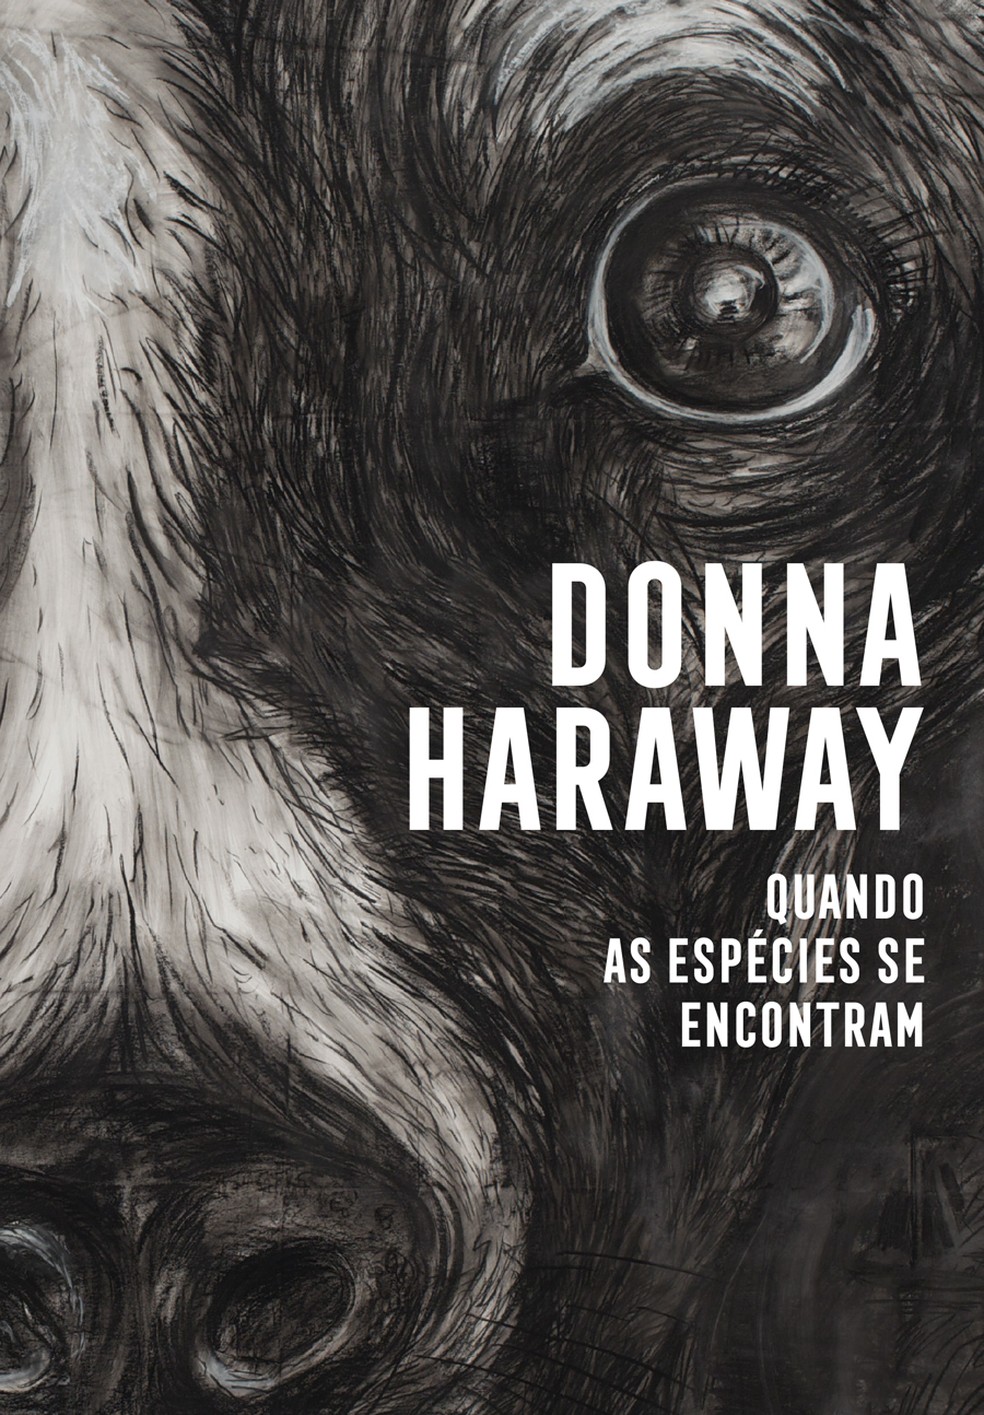 Capa de "Quando as espécies se encontram", livro da filósofa e bióloga americana Donna Haraway publicado pela Ubu — Foto: Divulgação